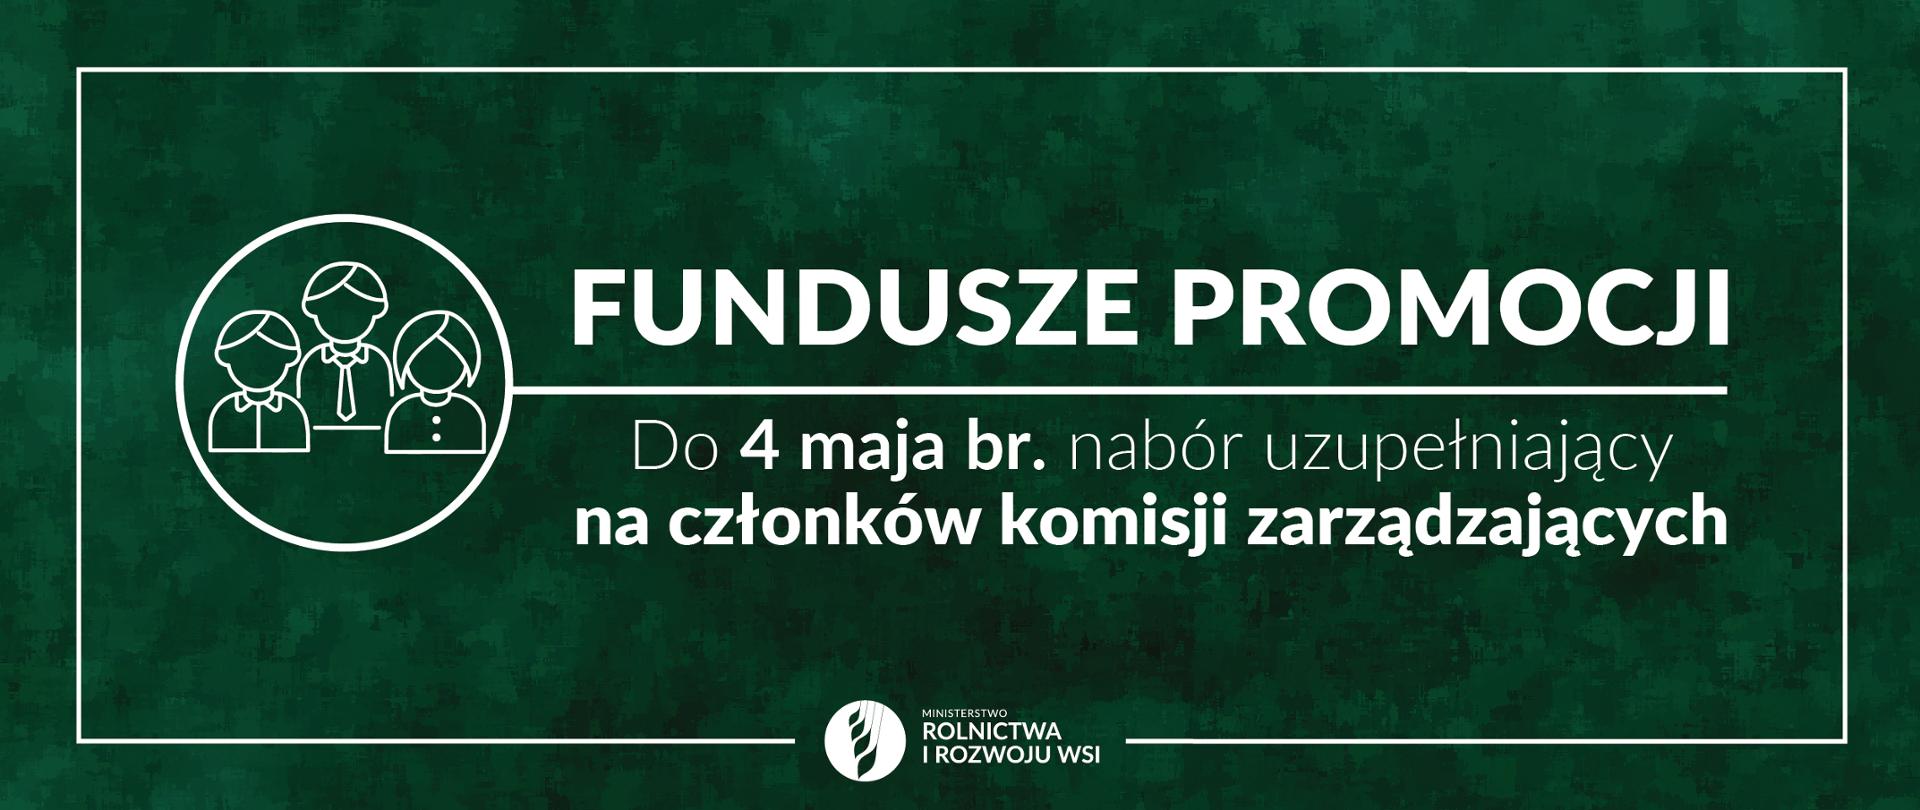 Fundusze promocji nabór stanowisk 21.04.2021